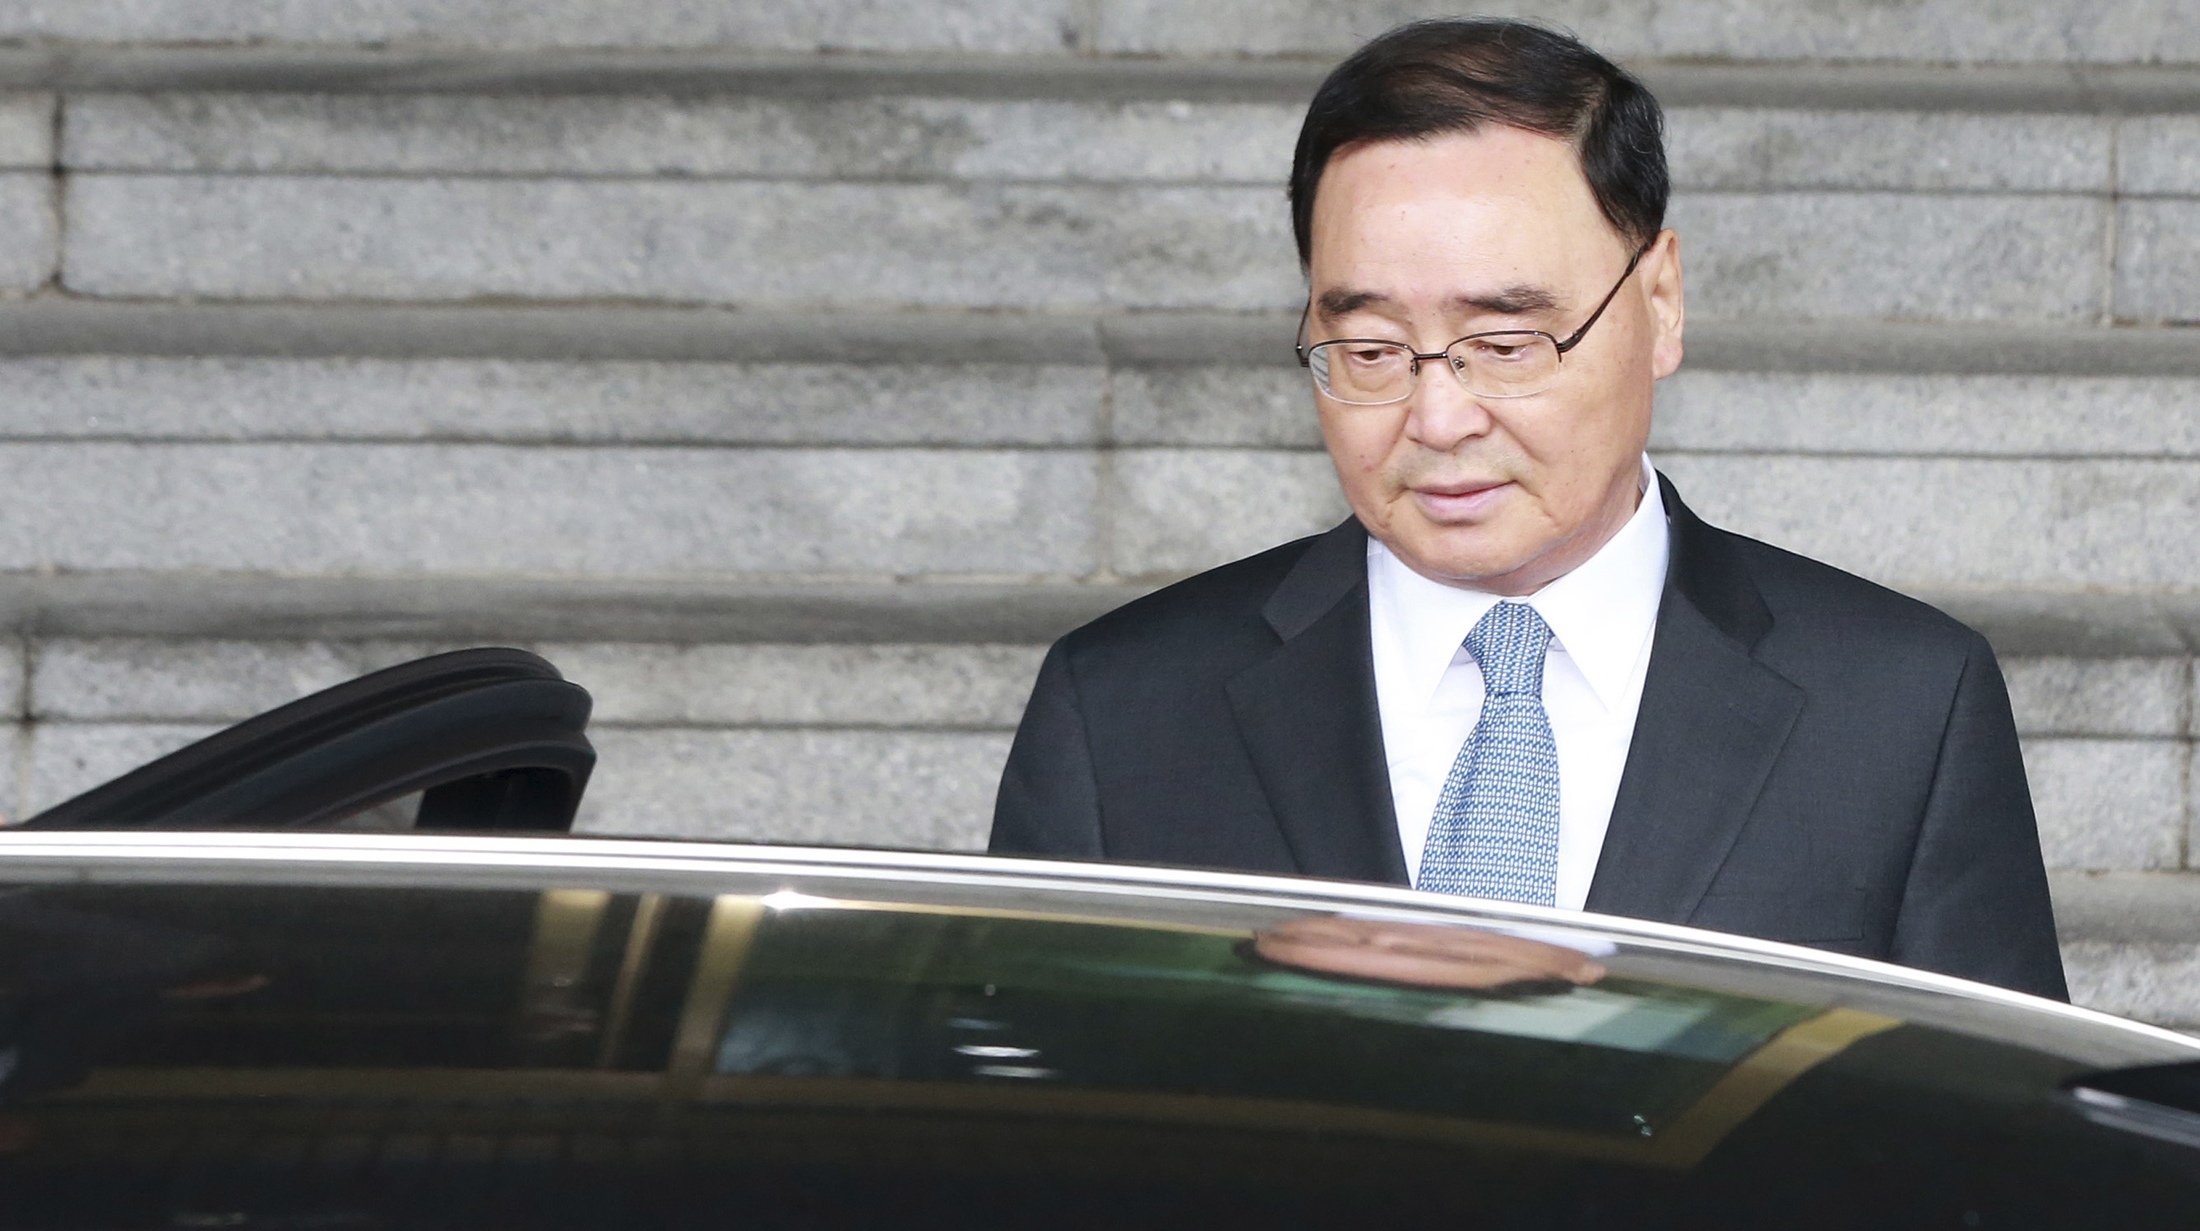 Παραιτήθηκε ο πρωθυπουργός της Νότιας Κορέας – Ανέλαβε την πολιτική ευθύνη για την τραγωδία